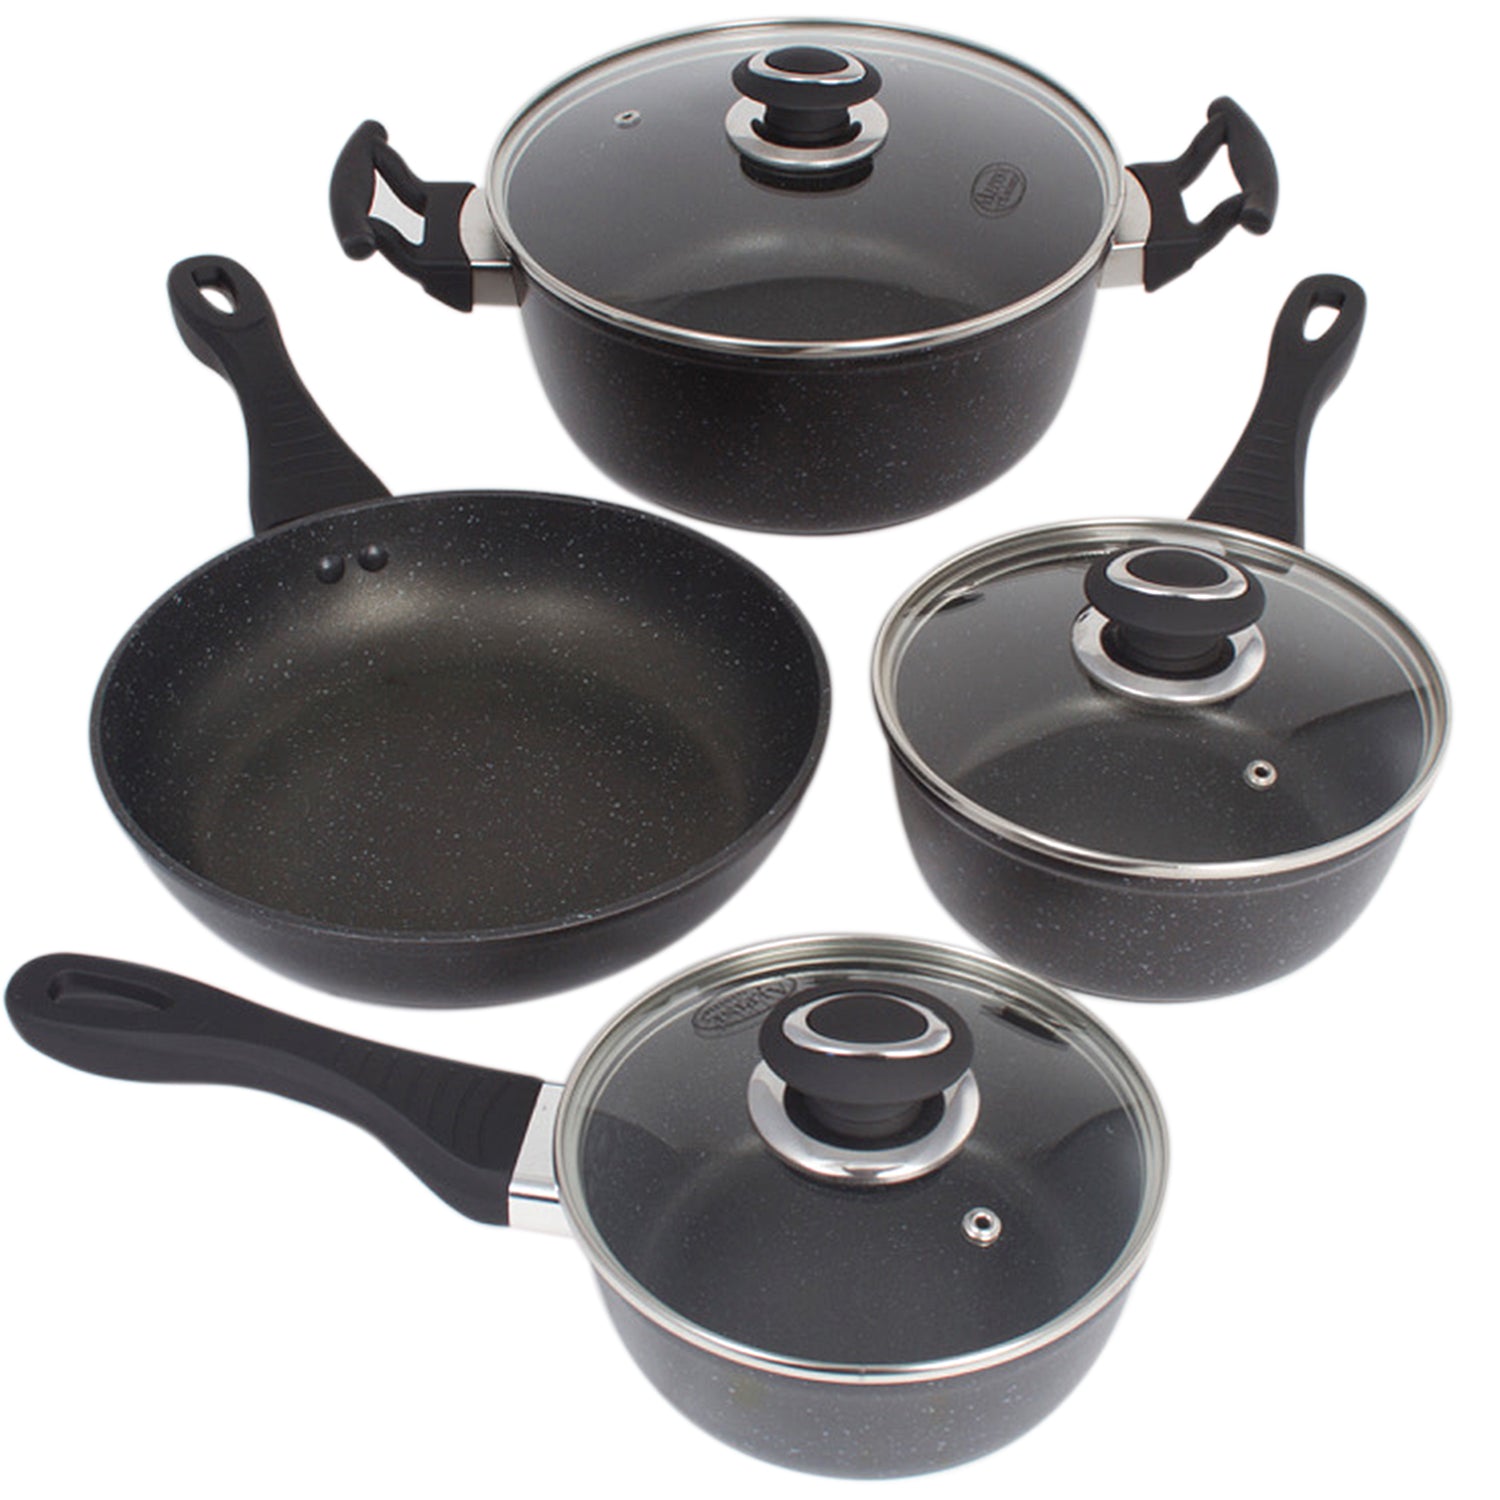 Marble 7 Pieces Aluminum Non Stick Cookware Set - Stockpot Sauce Fry Pan Set